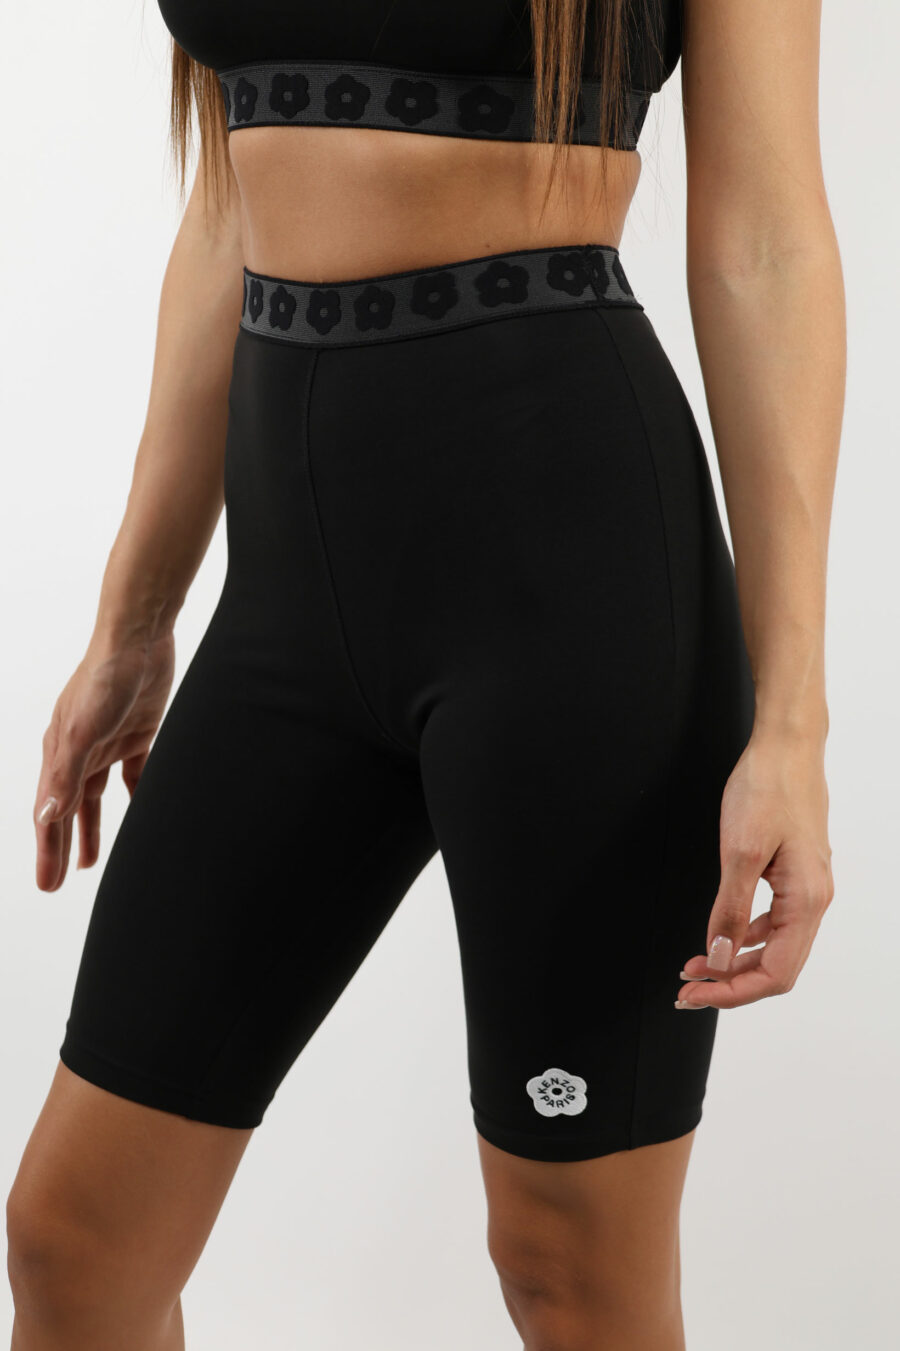 Pantalón corto de ciclismo negro con minilogo "boke flower" blanco - 109629